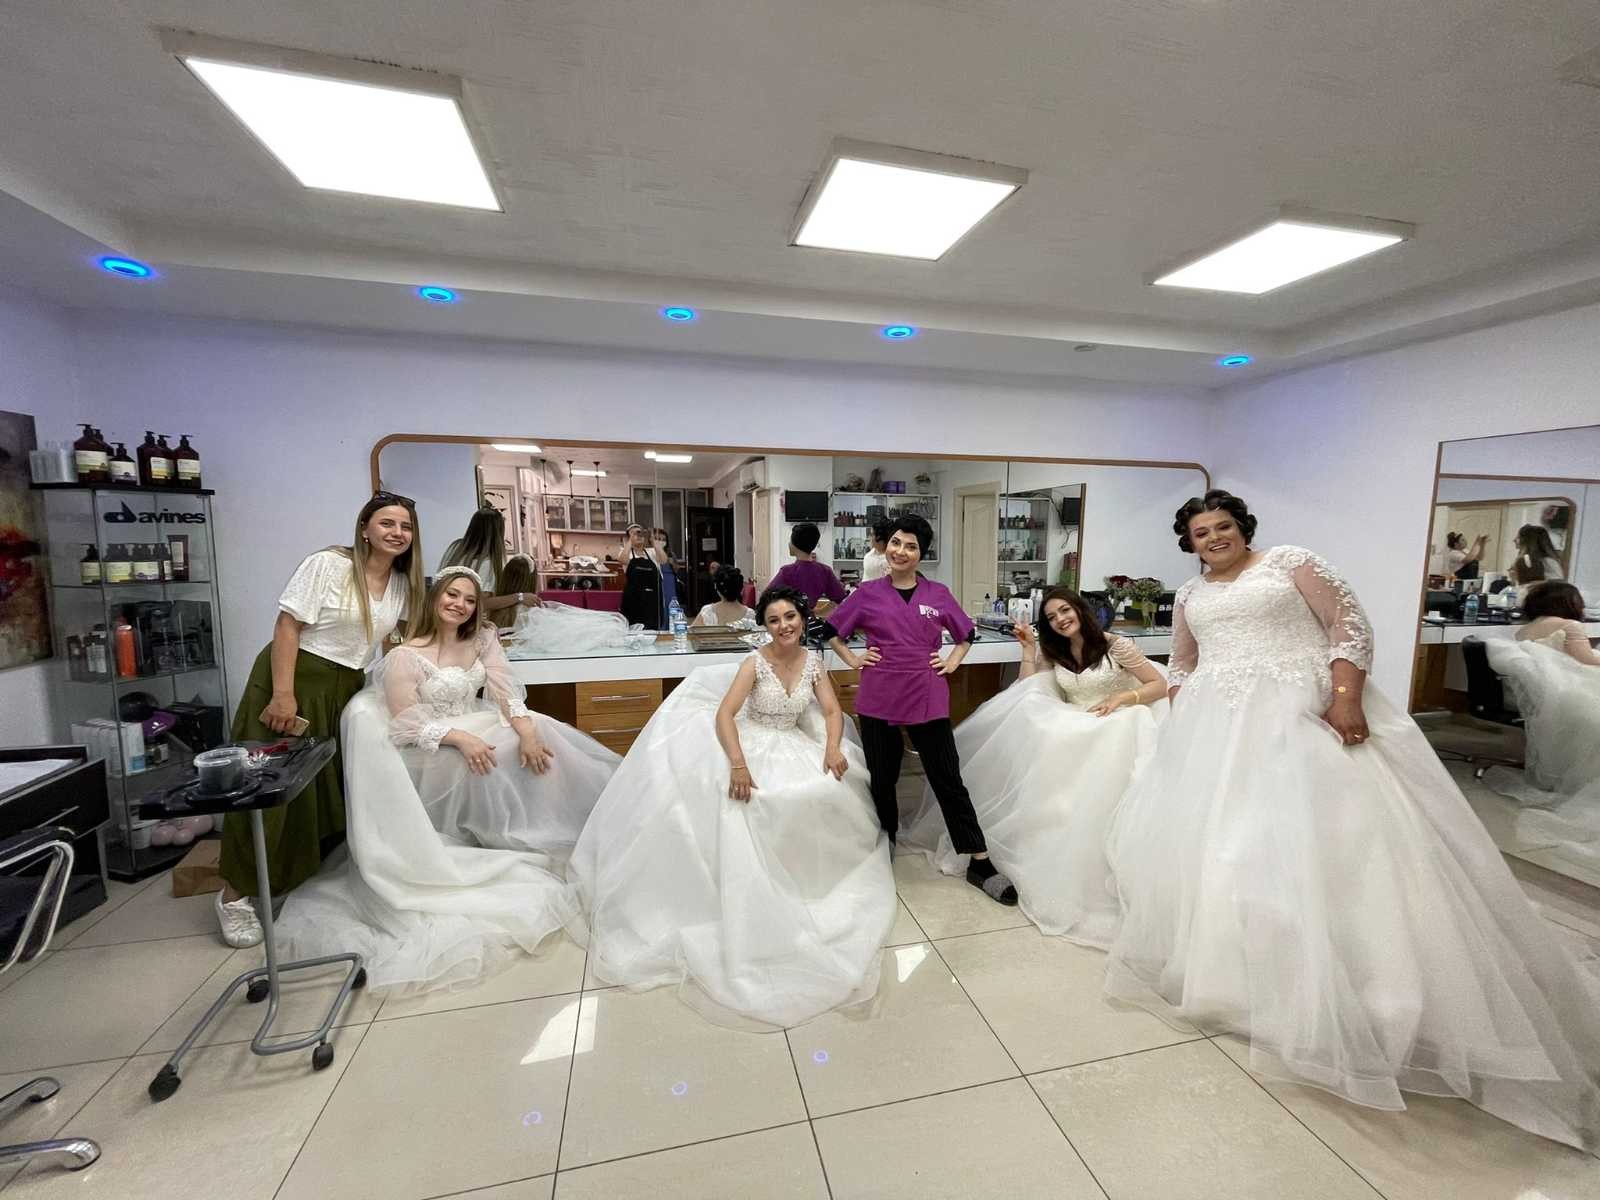 Gelinlerin düğün öncesi tatlı telaşı #ordu